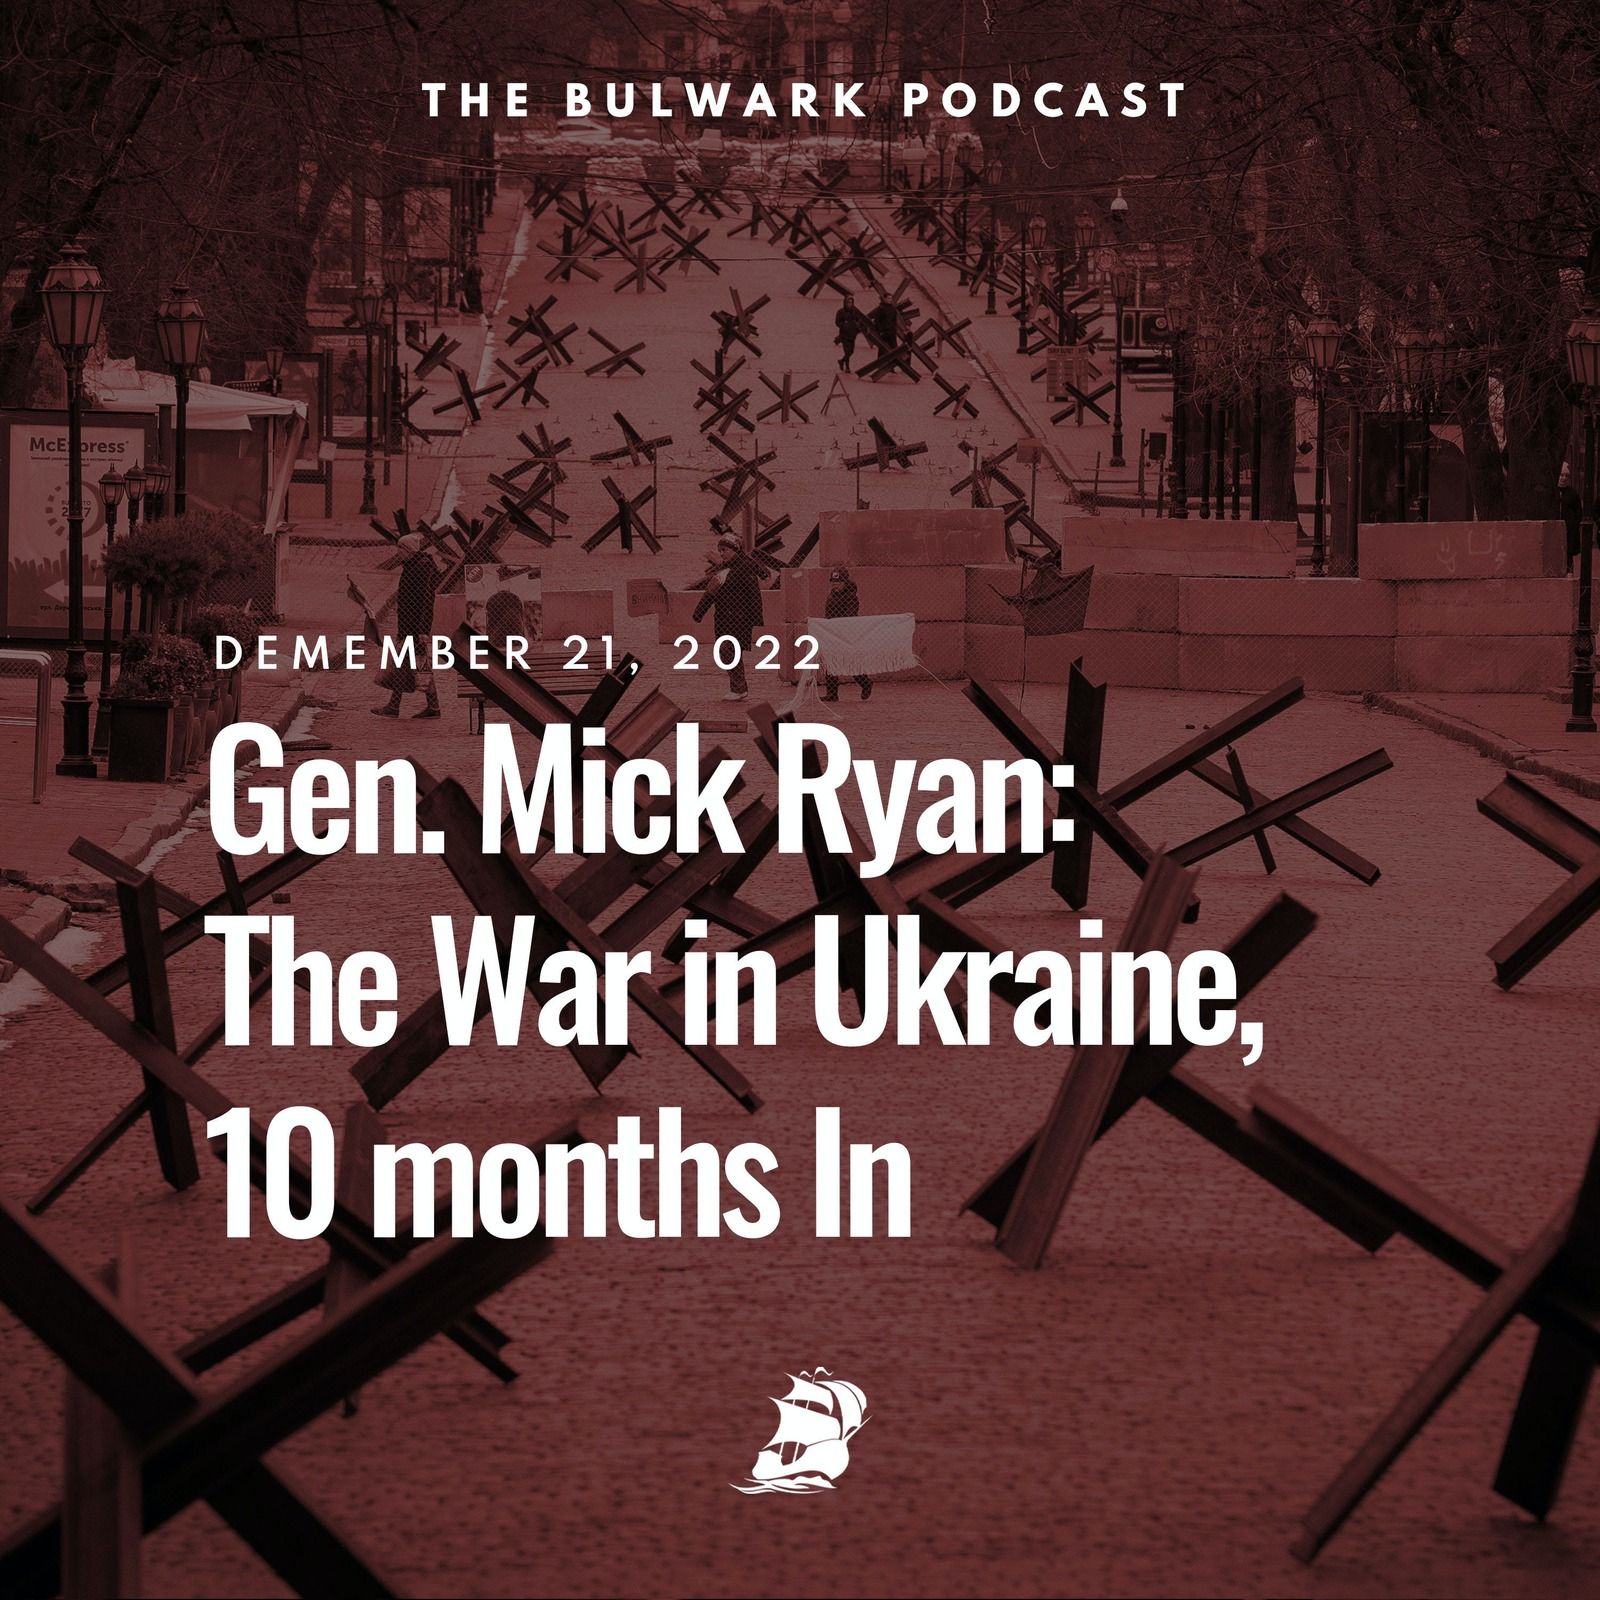 Gen. Mick Ryan: The War in Ukraine, 10 months In